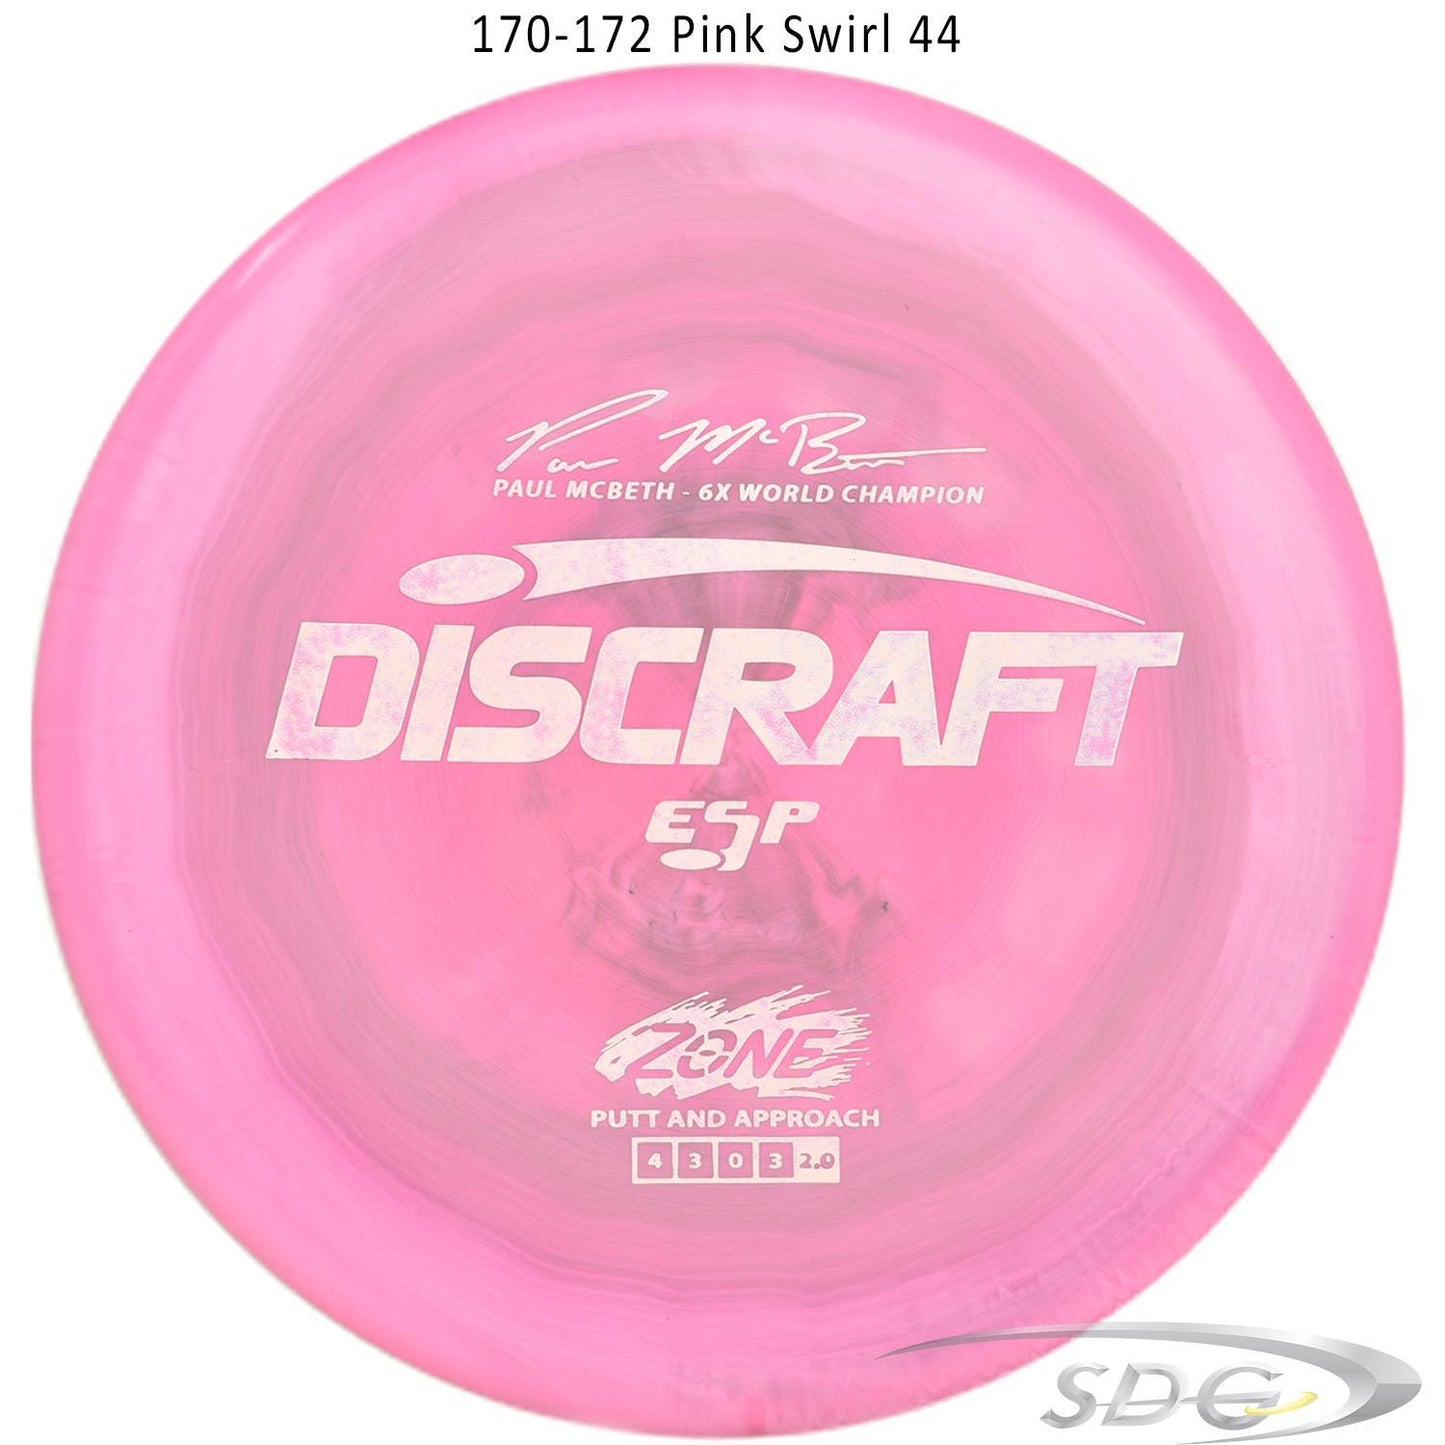 discraft-esp-zone-6x-paul-mcbeth-signature-series-disc-golf-putter 170-172 Pink Swirl 44